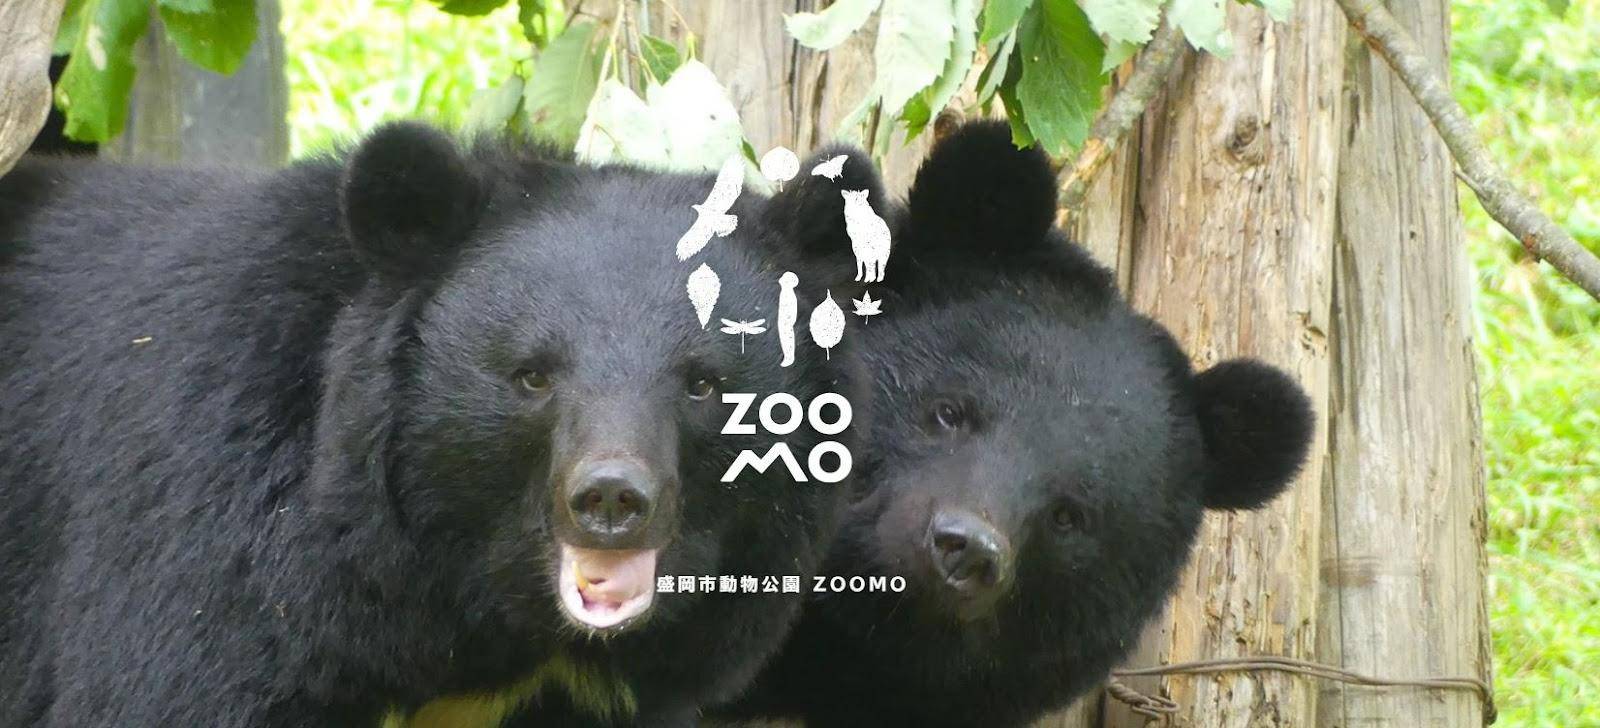 夏休みのお出かけスポットー【岩手県】盛岡市動物公園ZOOMO